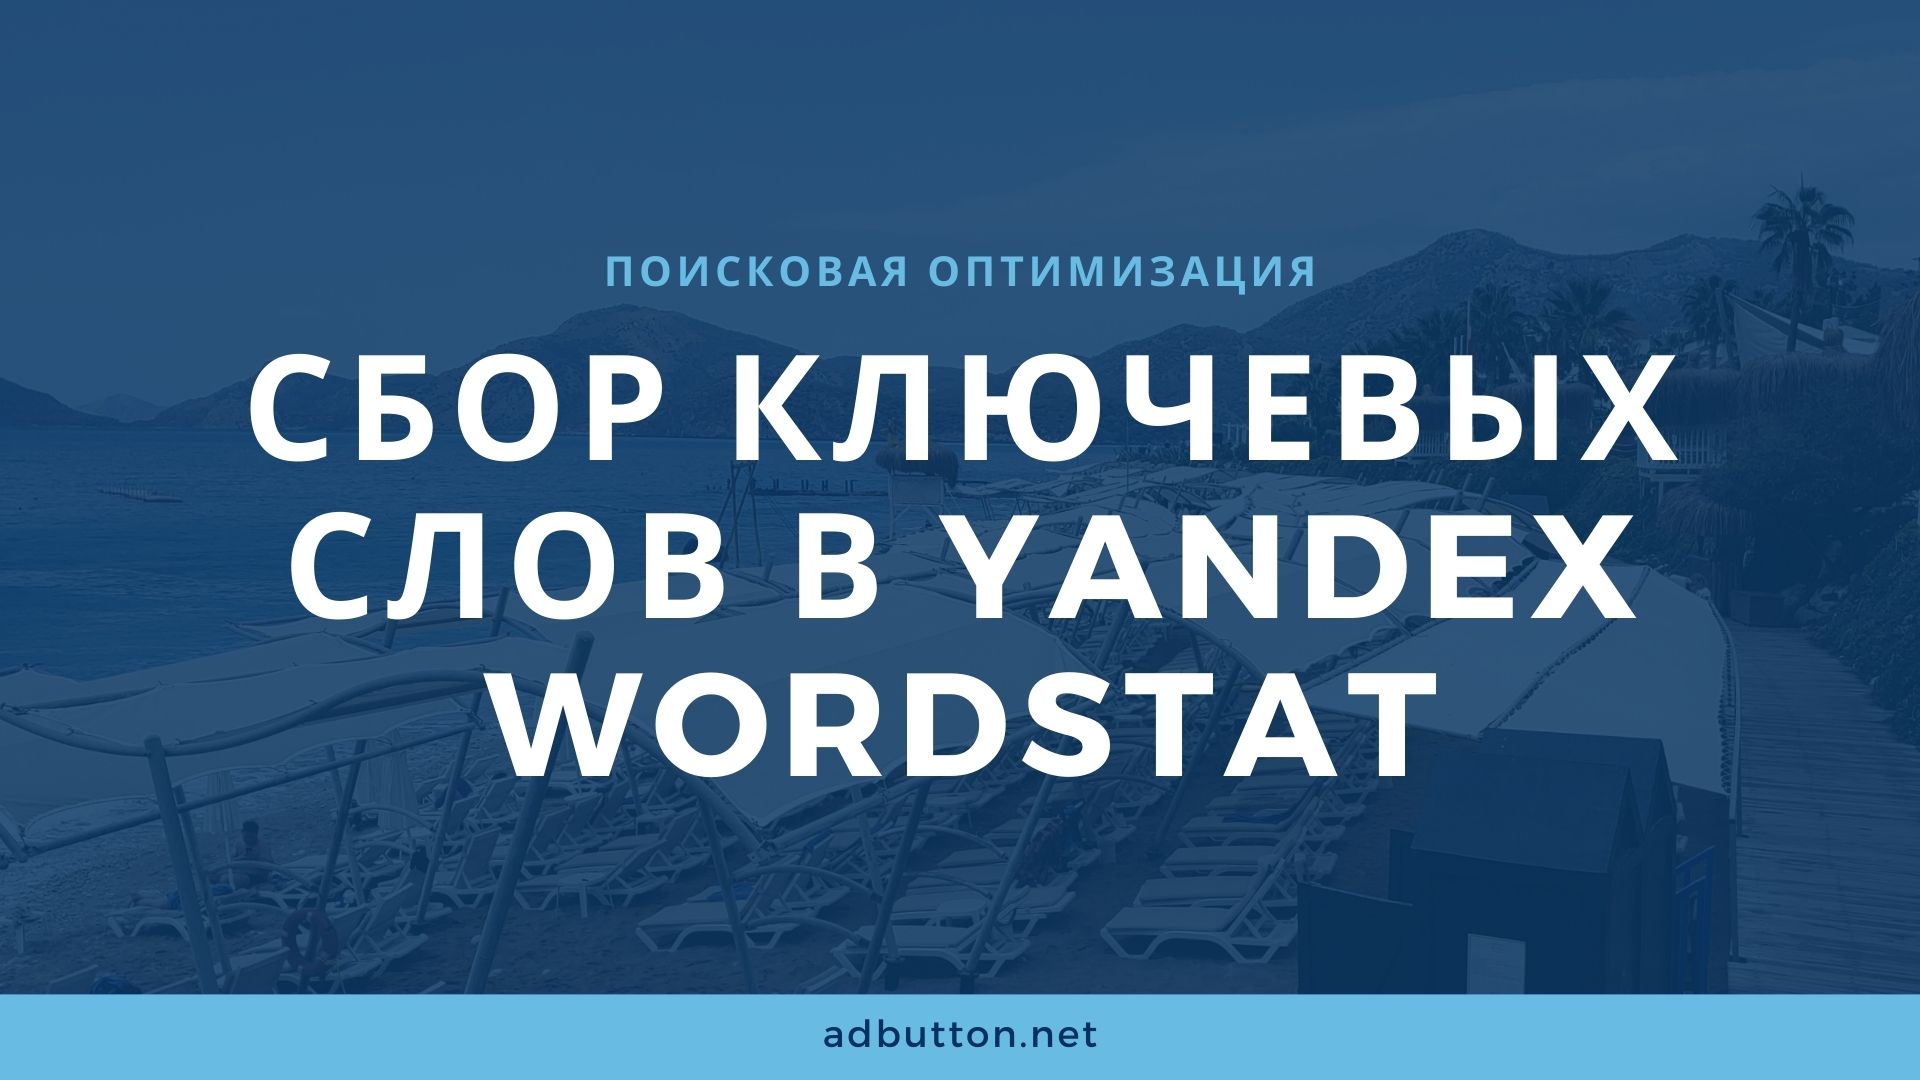 Яндекс Вордстат: сбор ключевых слов и составление семантического ядра